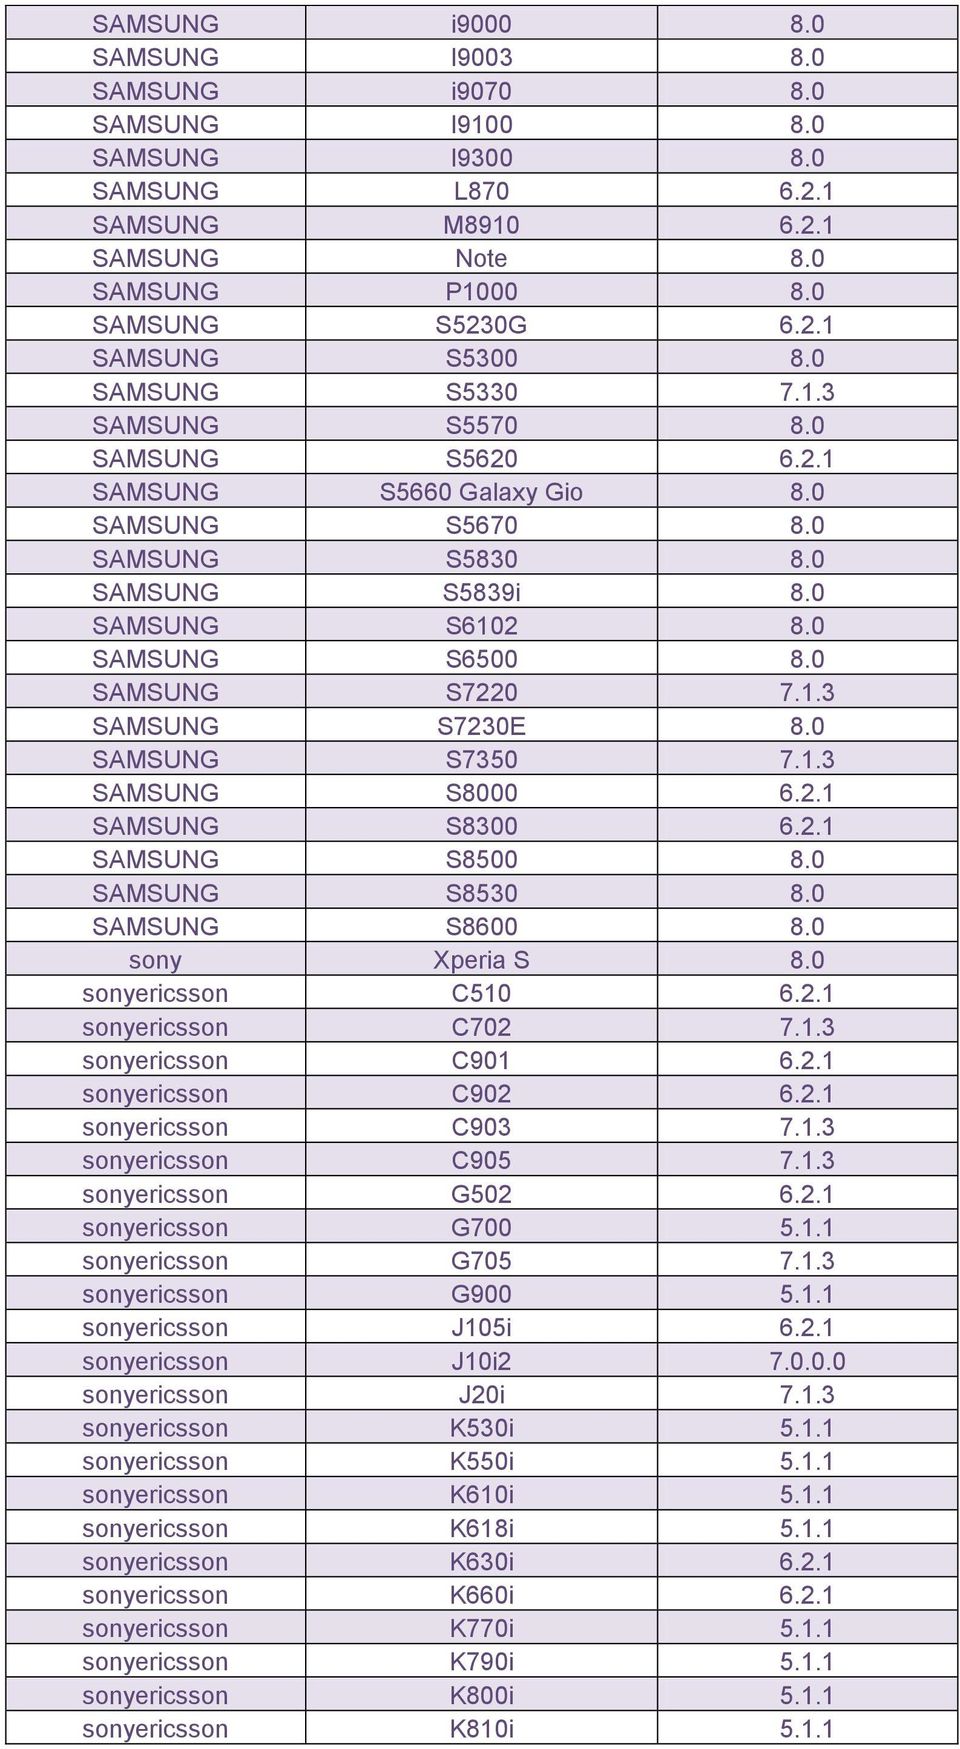 0 SAMSUNG S7350 7.1.3 SAMSUNG S8000 6.2.1 SAMSUNG S8300 6.2.1 SAMSUNG S8500 8.0 SAMSUNG S8530 8.0 SAMSUNG S8600 8.0 sony Xperia S 8.0 sonyericsson C510 6.2.1 sonyericsson C702 7.1.3 sonyericsson C901 6.